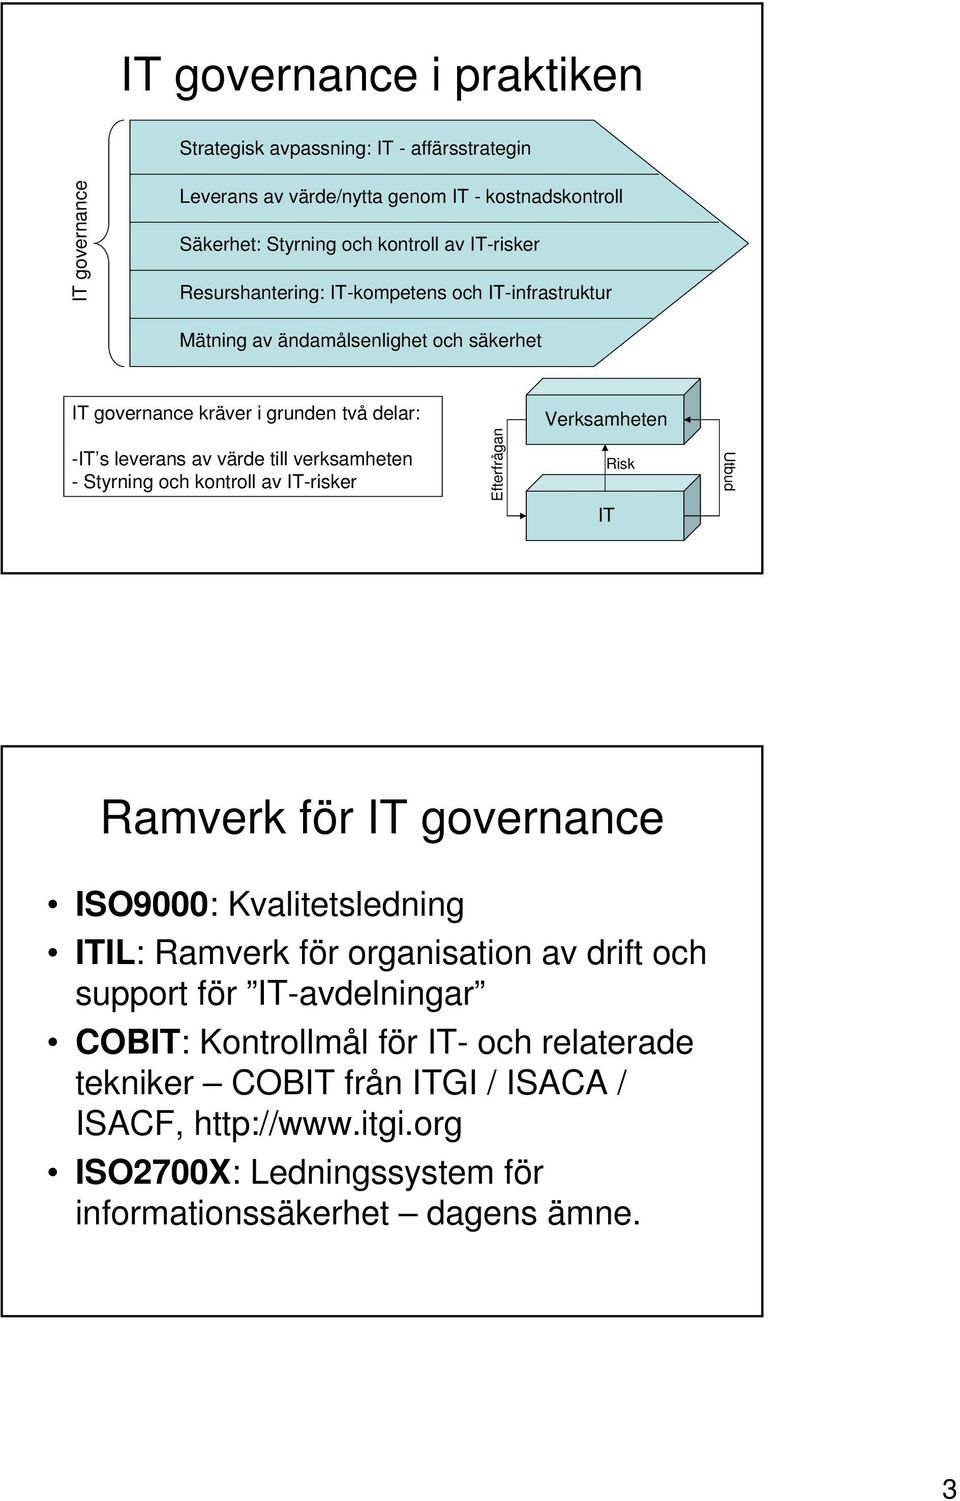 verksamheten - Styrning och kontroll av IT-risker Efterfrågan Risk Utbud IT Ramverk för IT governance ISO9000: Kvalitetsledning ITIL: Ramverk för organisation av drift och support